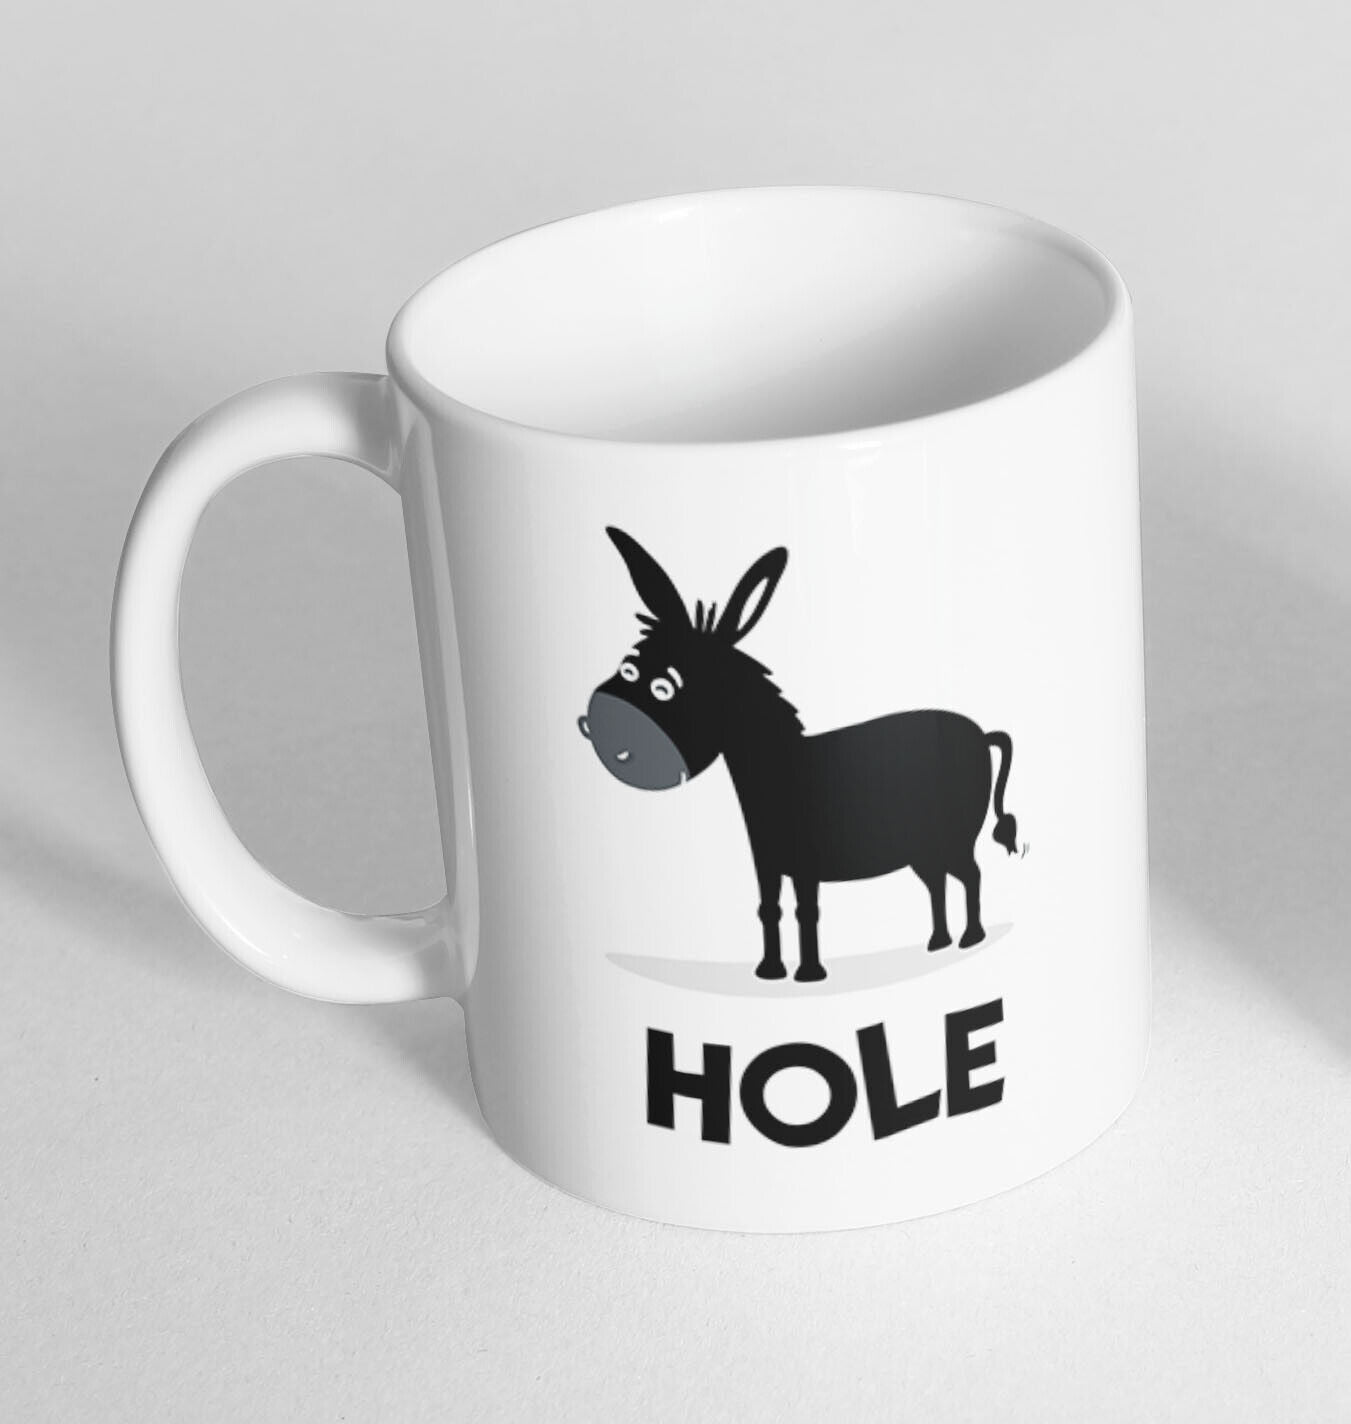 Funny Novelty Ceramic Printed Mug Thermal Mug Gift Coffee Tea 5